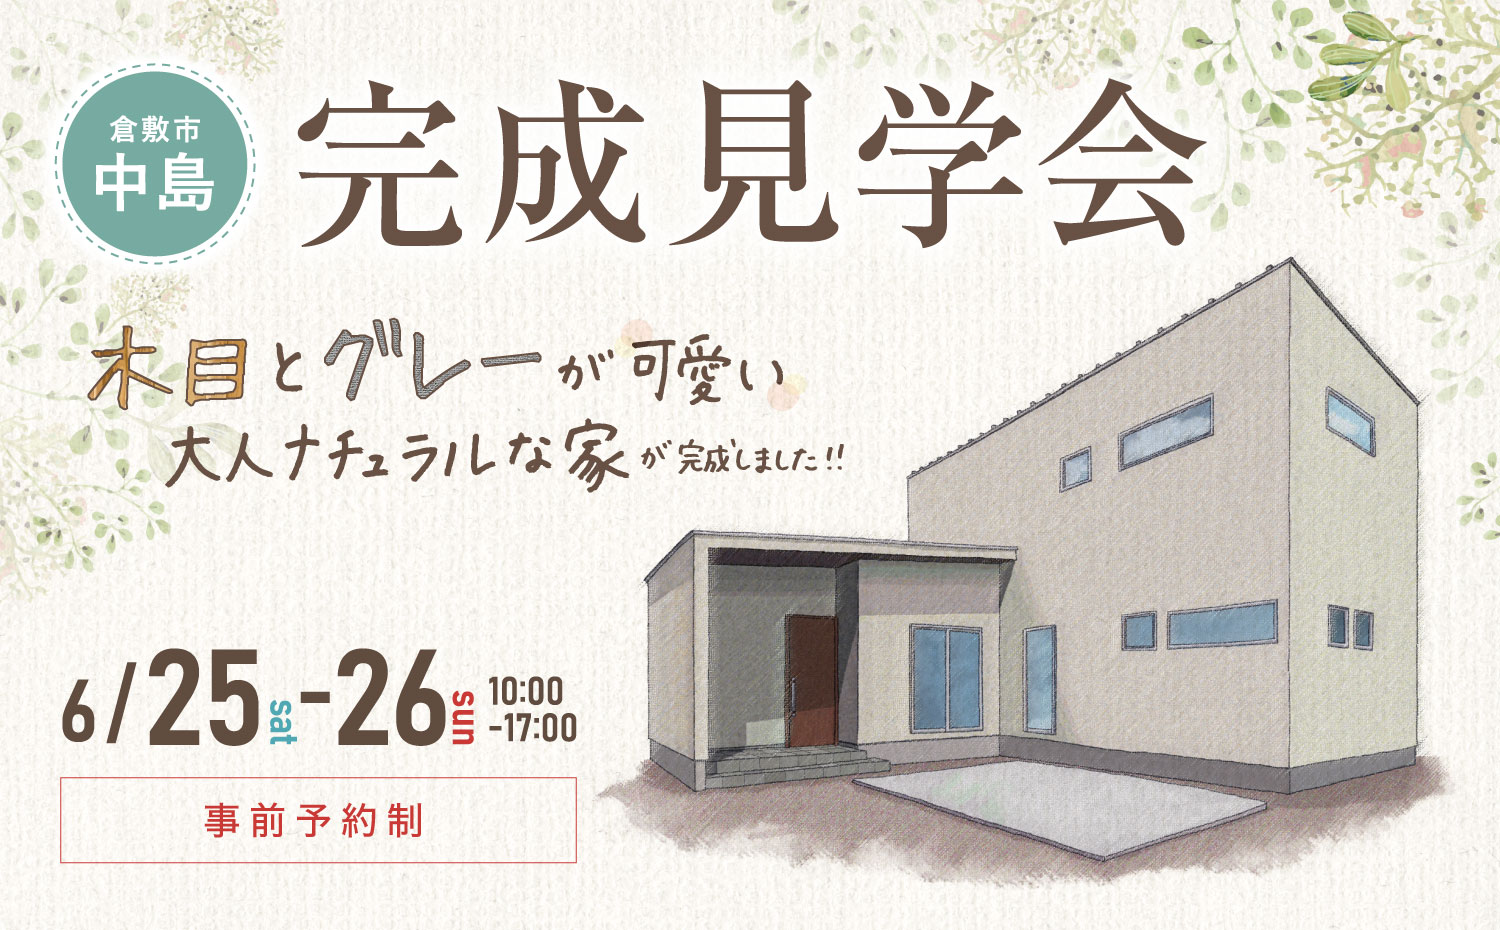 【随時、ご見学可能です】モデルハウス完成見学会in倉敷市中島